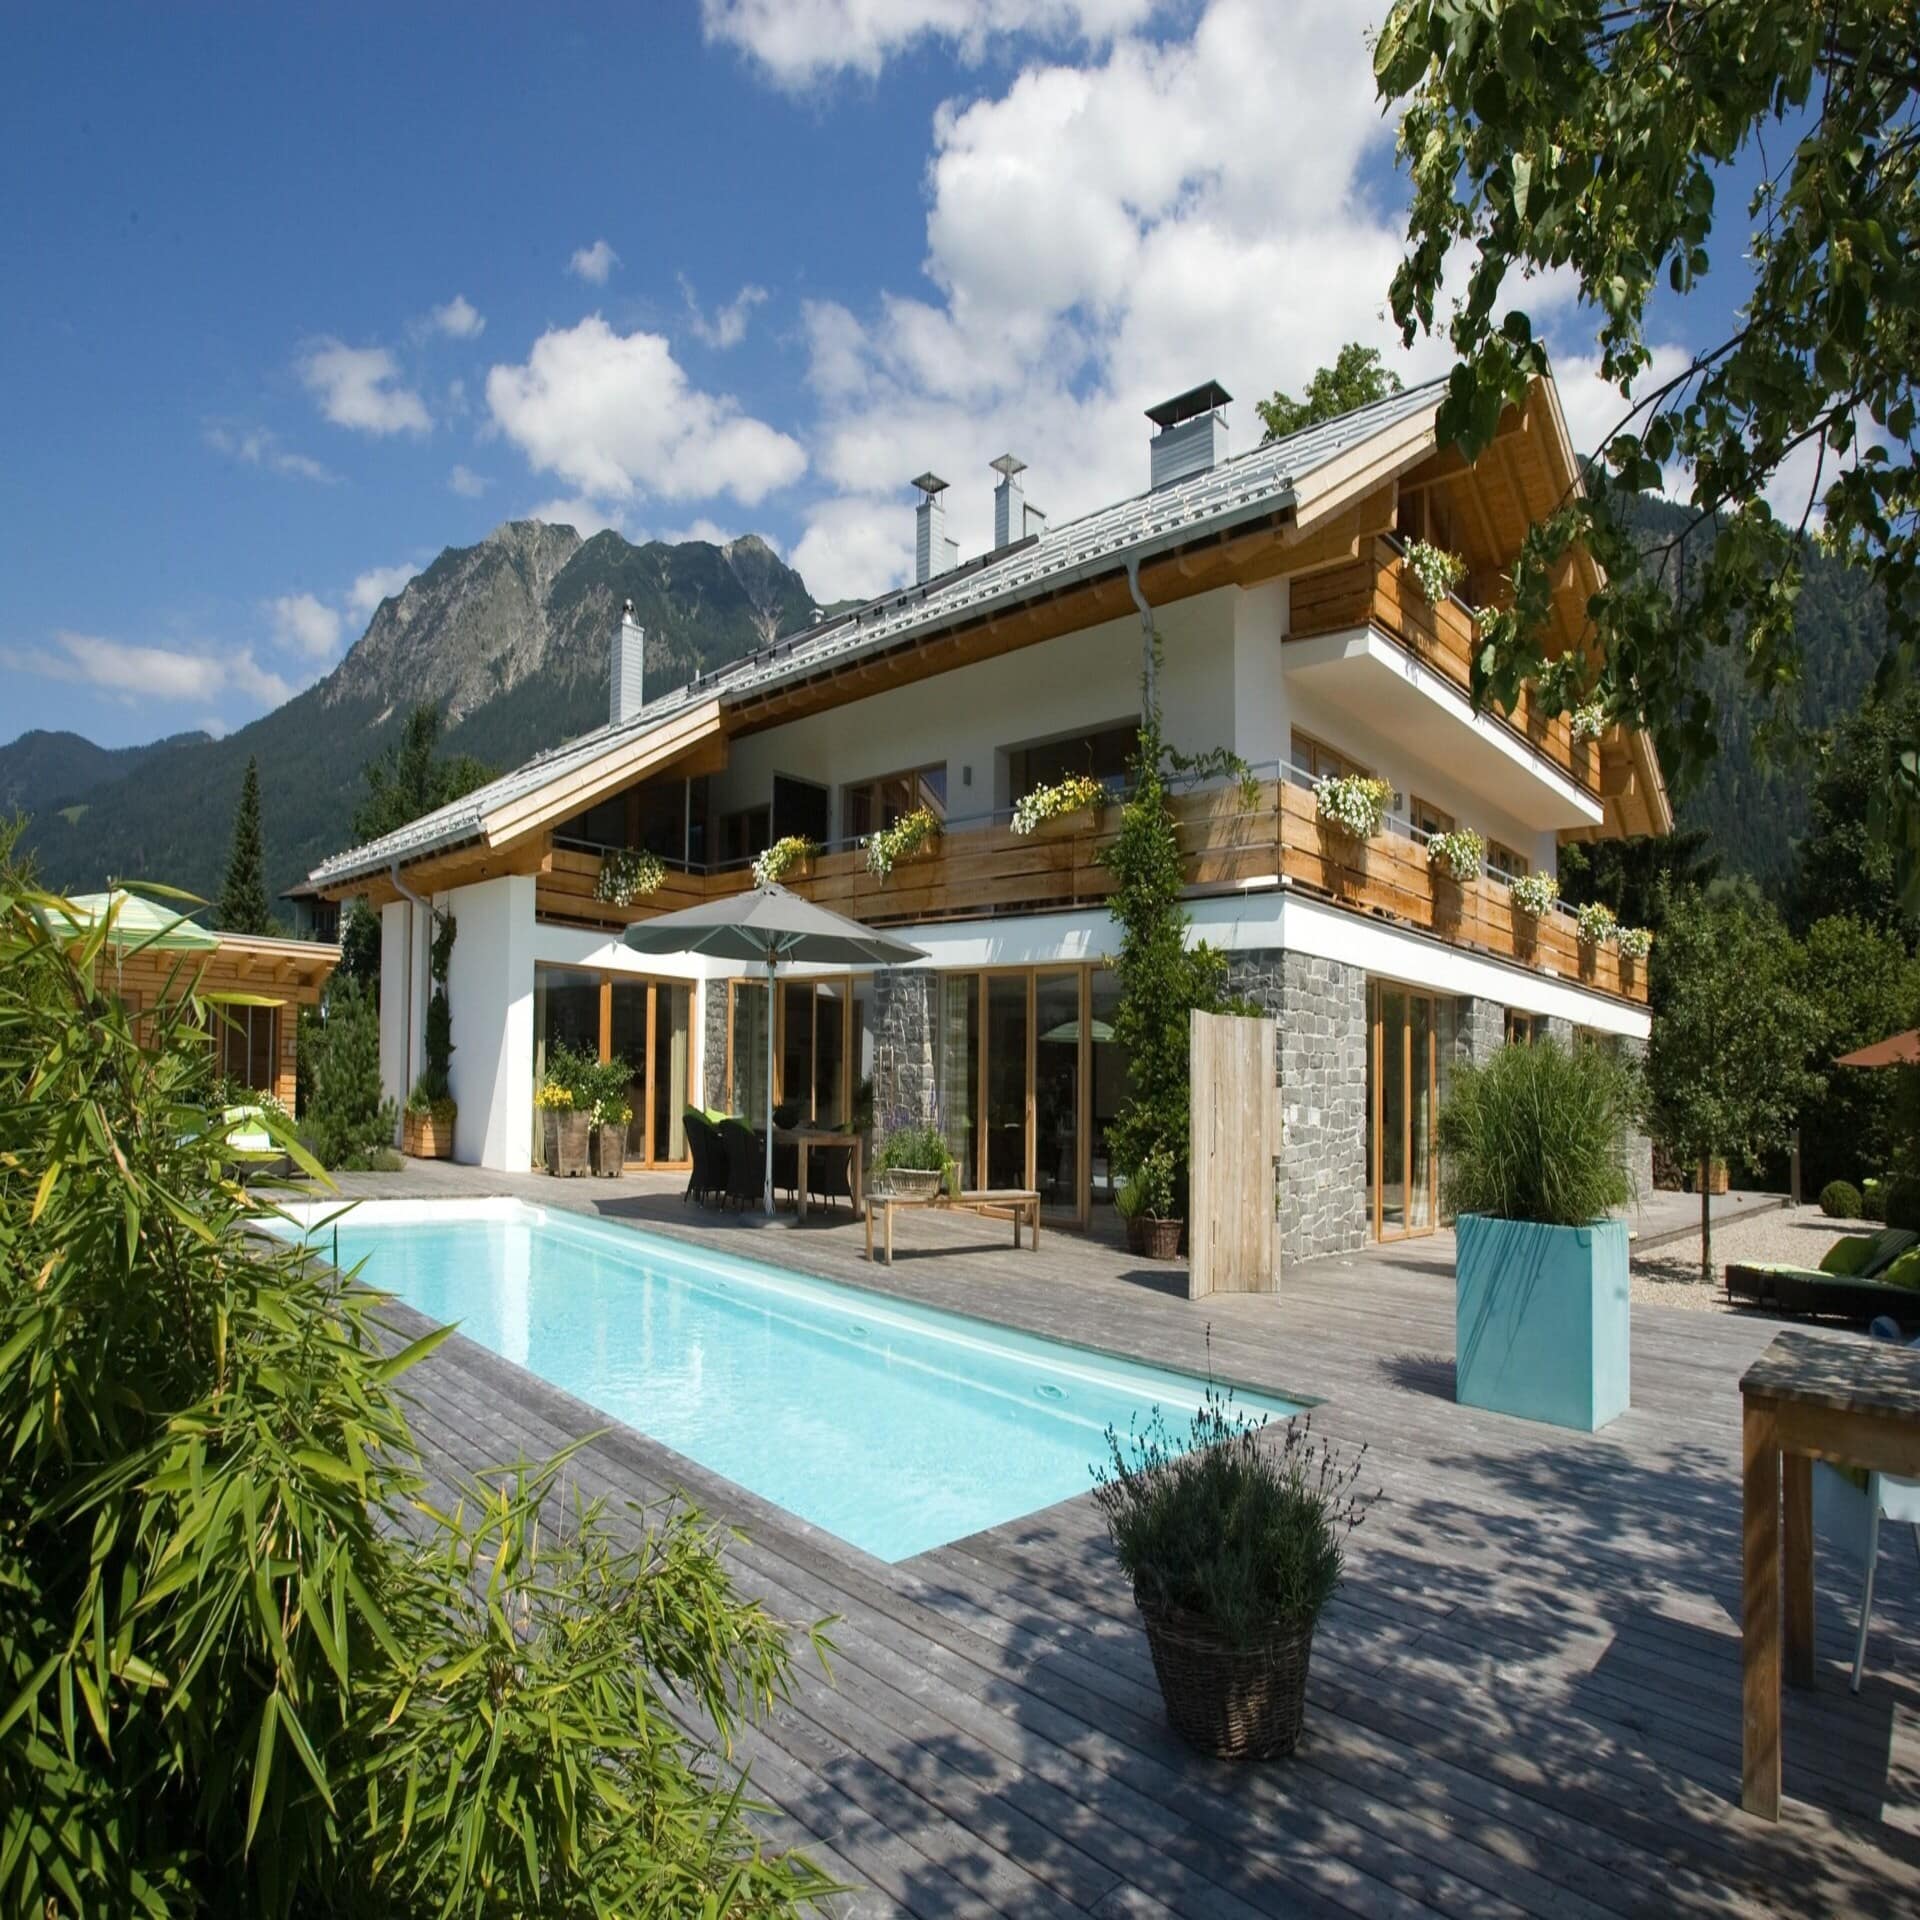 Ferienvilla im bayerischen Stil mit Holzdeck und großem Pool in Oberstdorf. Die Sonne scheint.